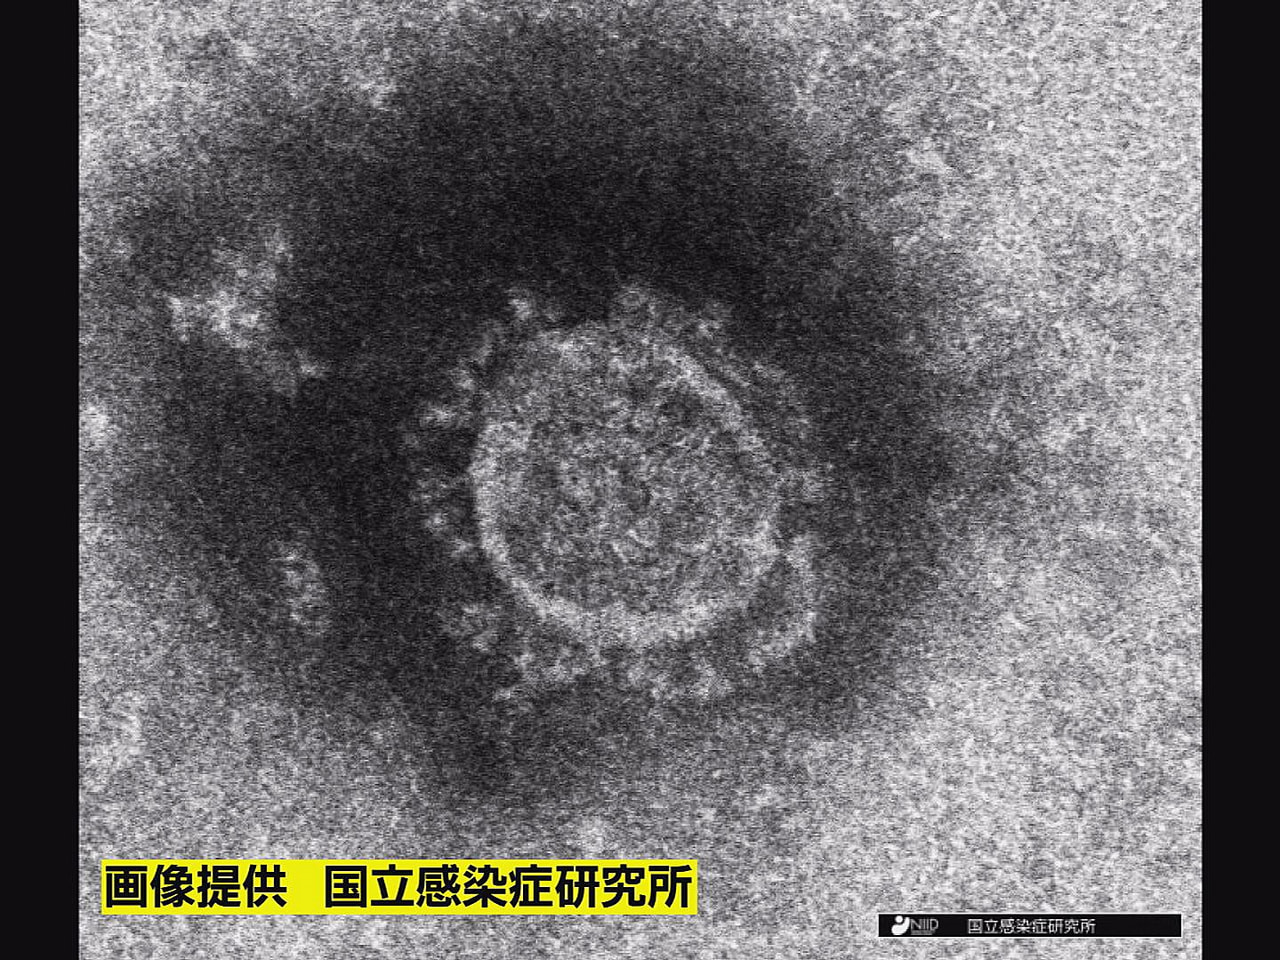 岐阜県は４日、新型コロナウイルスの感染が新たに１１人確認されたと発表しました。 ...